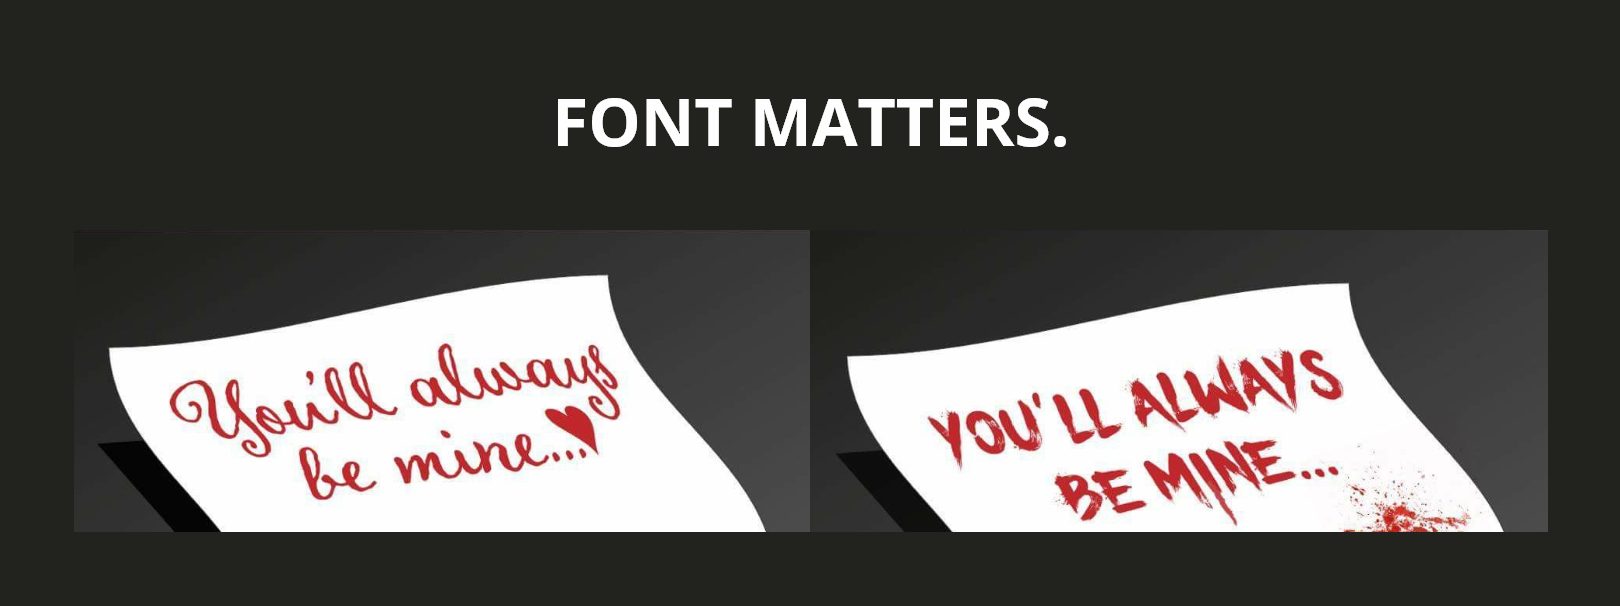 font-matters brand identity